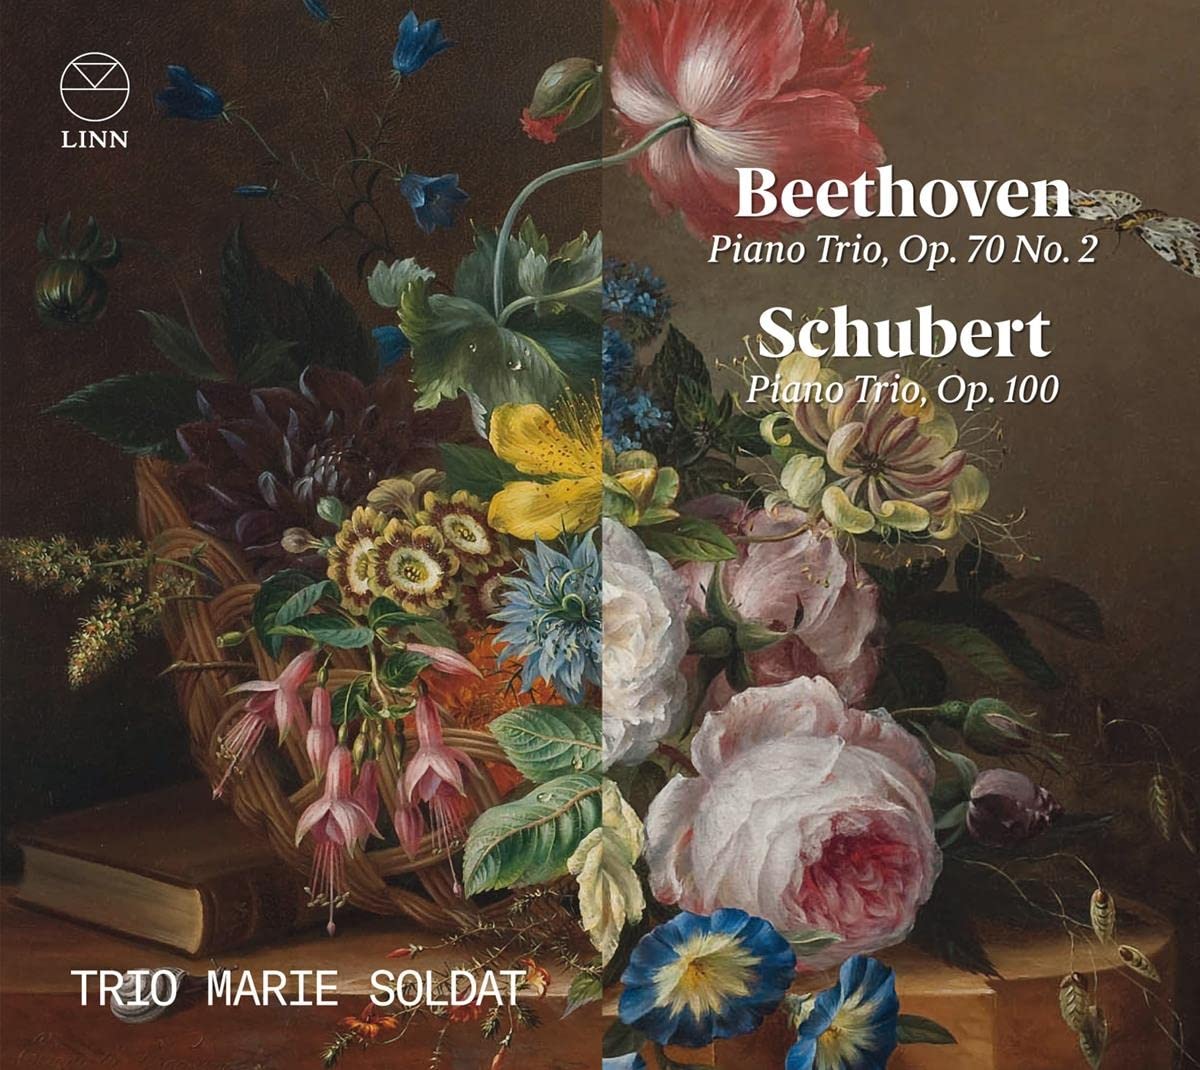 Trio Marie Soldat - Beethoven: Piano Trio, Op. 70 No. 2 & Schubert: Piano Trio Op. 100